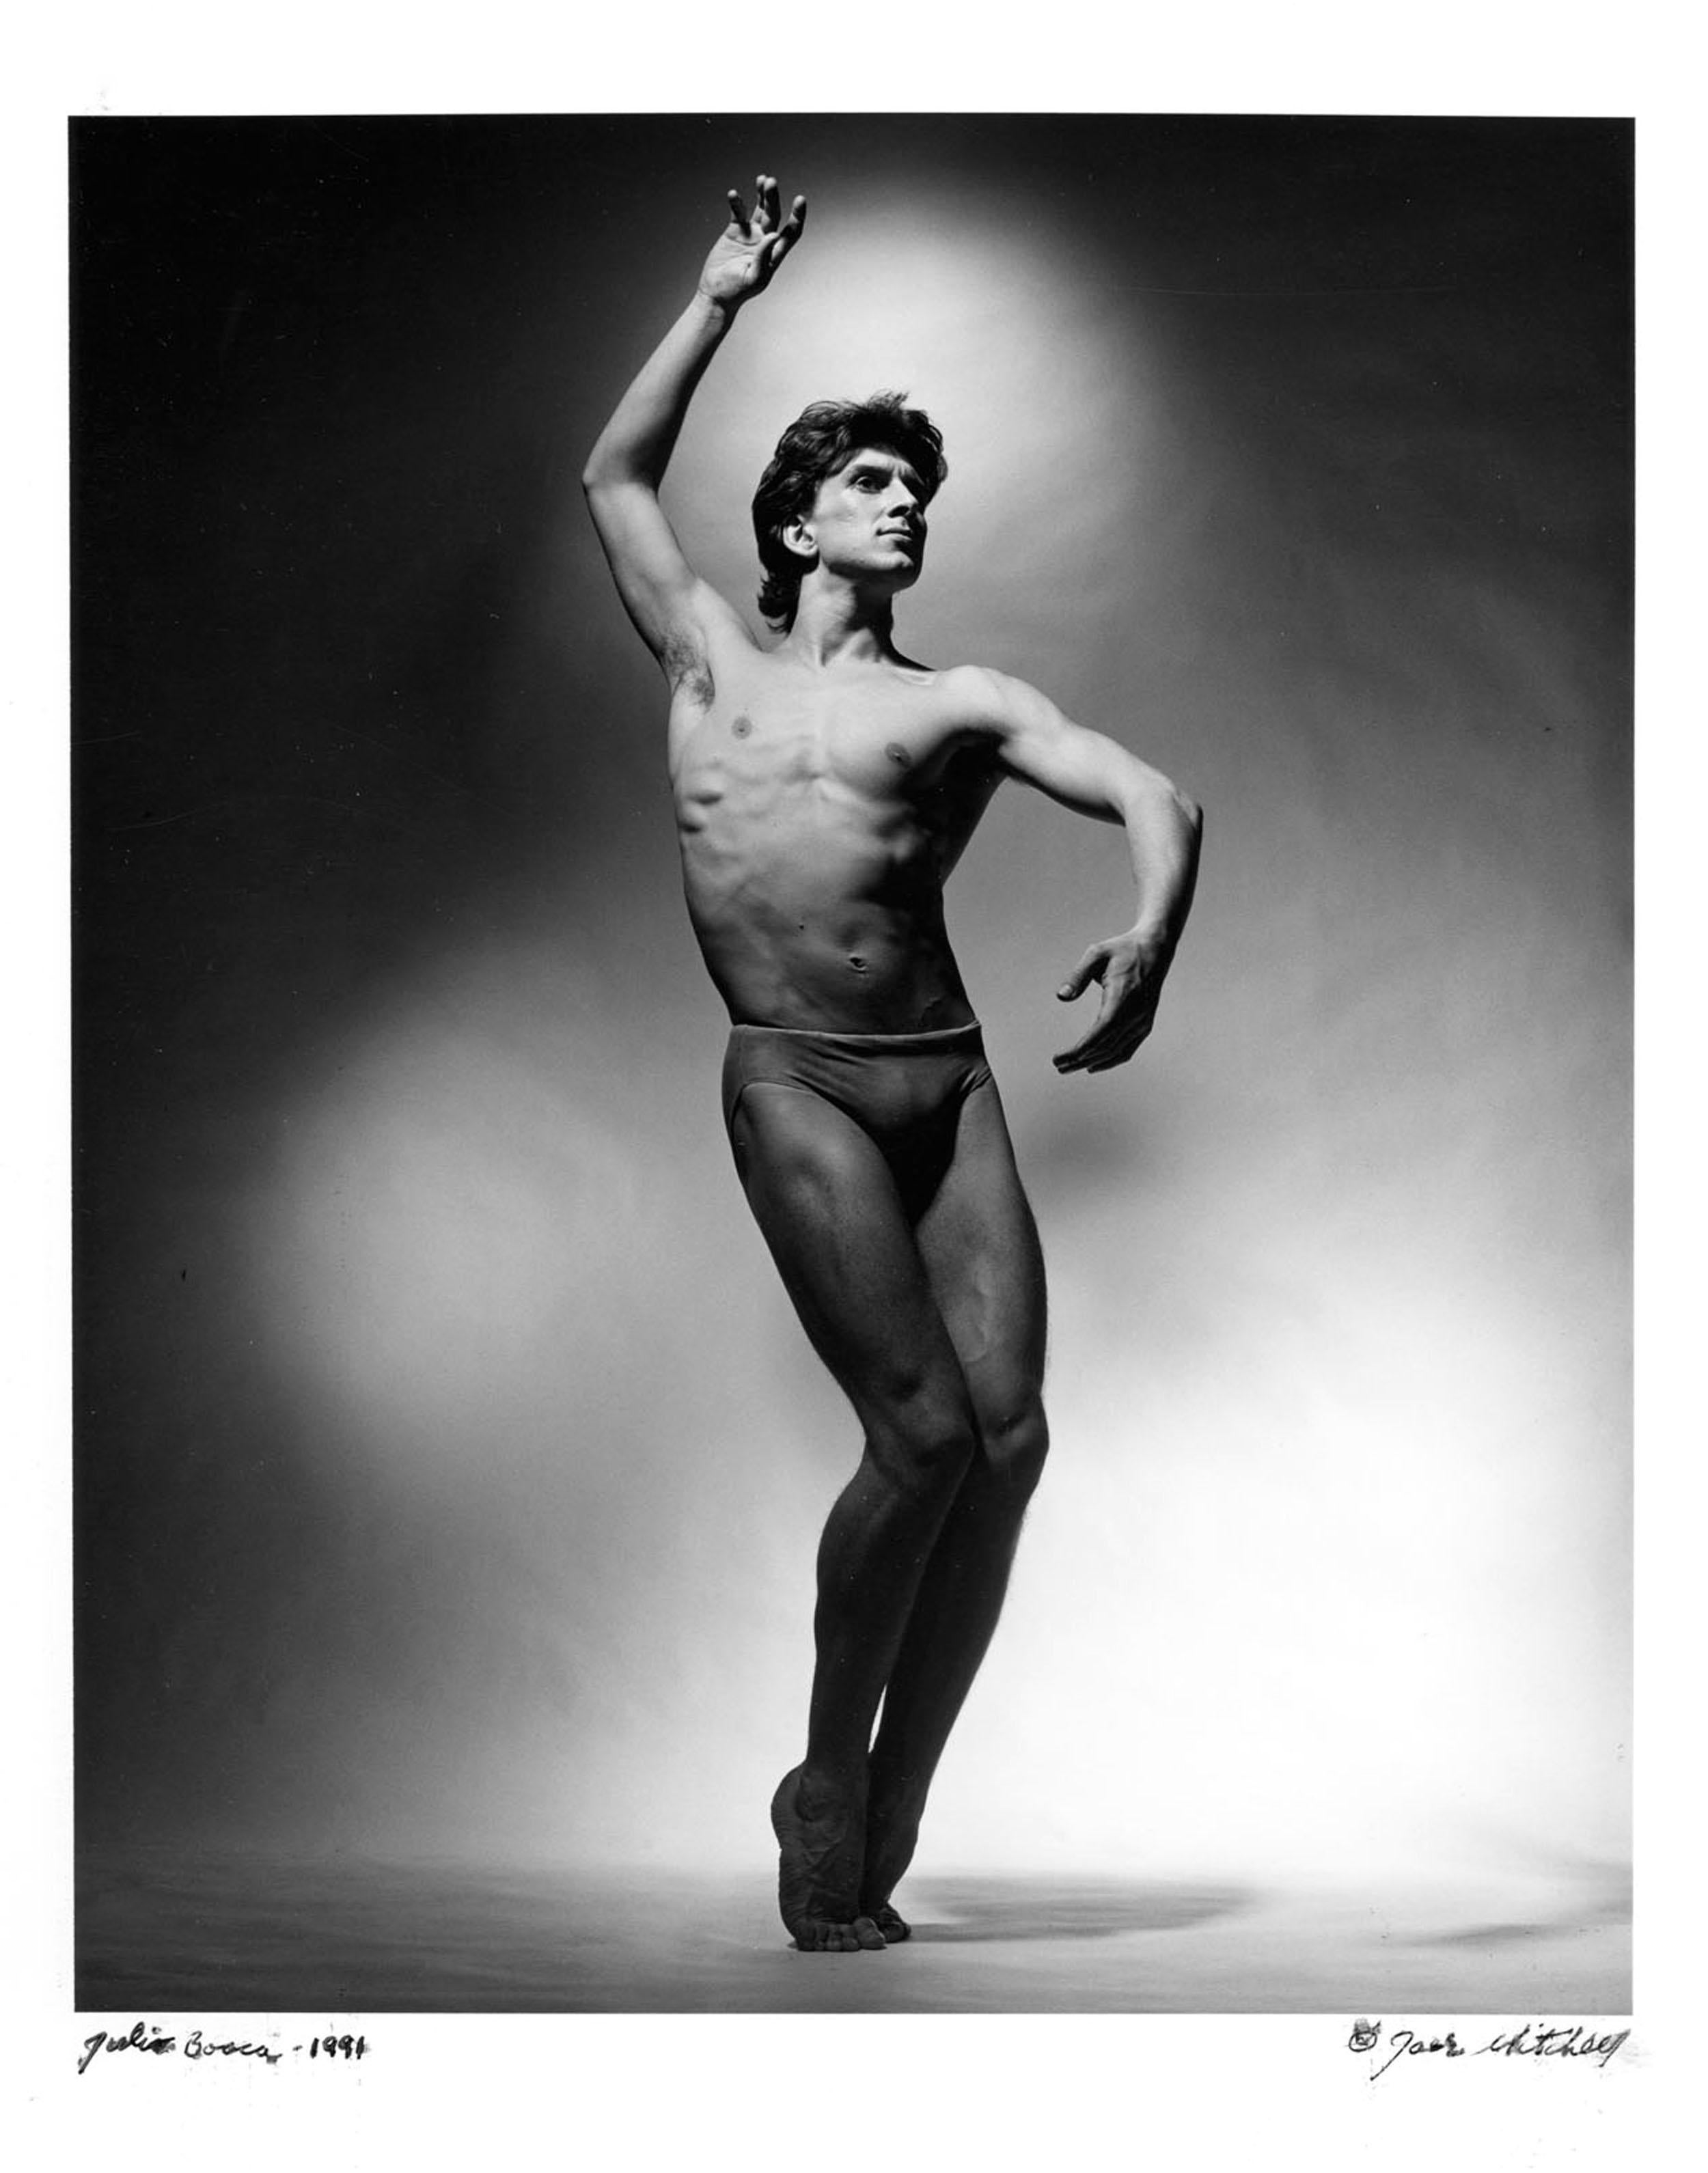 11 x 14" alte Silbergelatinefotografie des argentinischen Tänzers Julio Bocca, einem der wichtigsten Balletttänzer des späten 20. Jahrhunderts, fotografiert 1991. Signiert von Jack Mitchell auf der Vorderseite des Drucks. Kommt direkt aus dem Jack